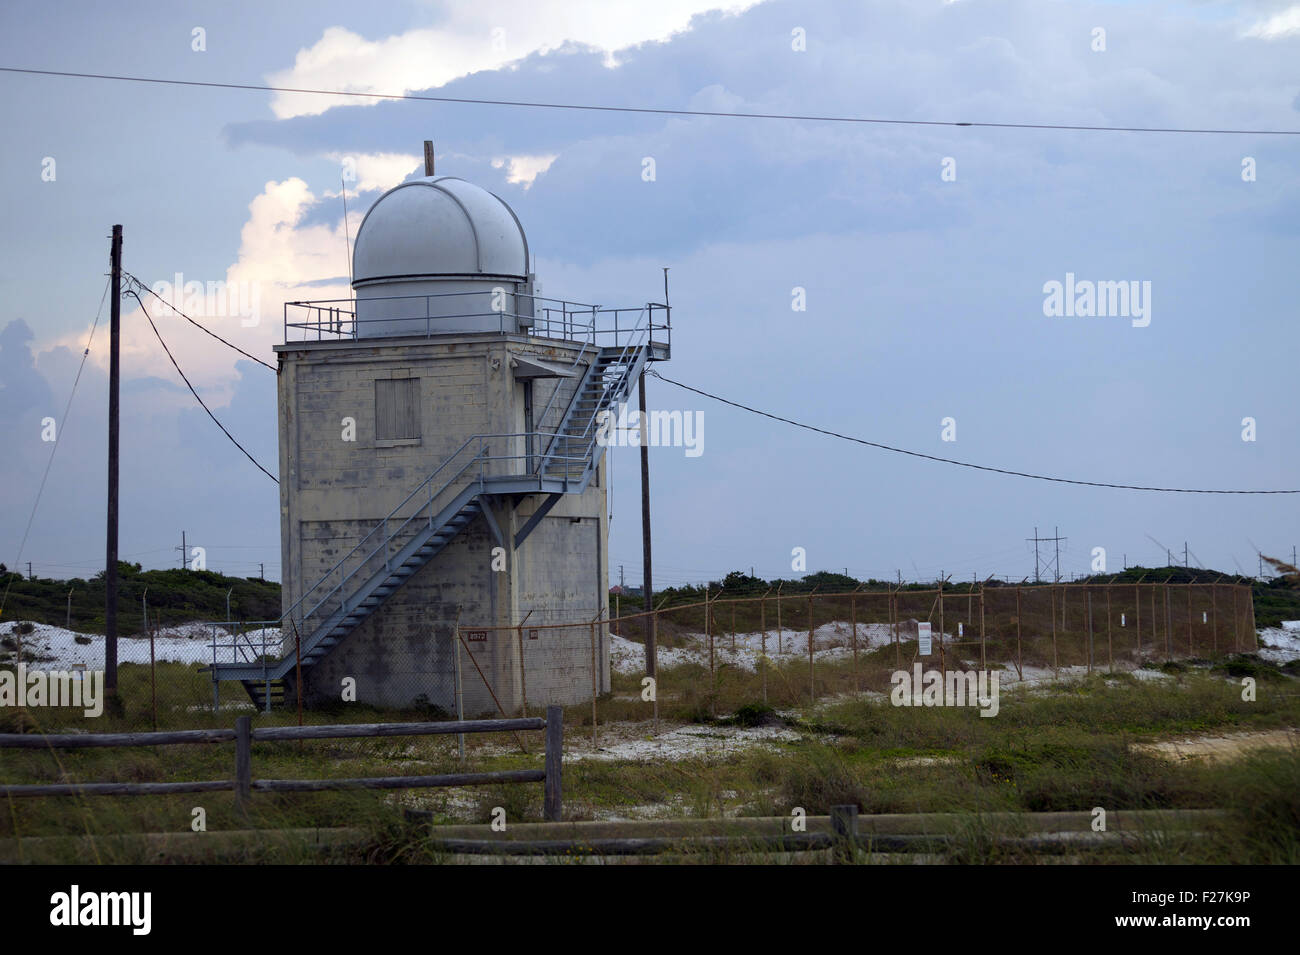 Un petit observatoire situé dans un parc d'état de plage en Floride. Banque D'Images